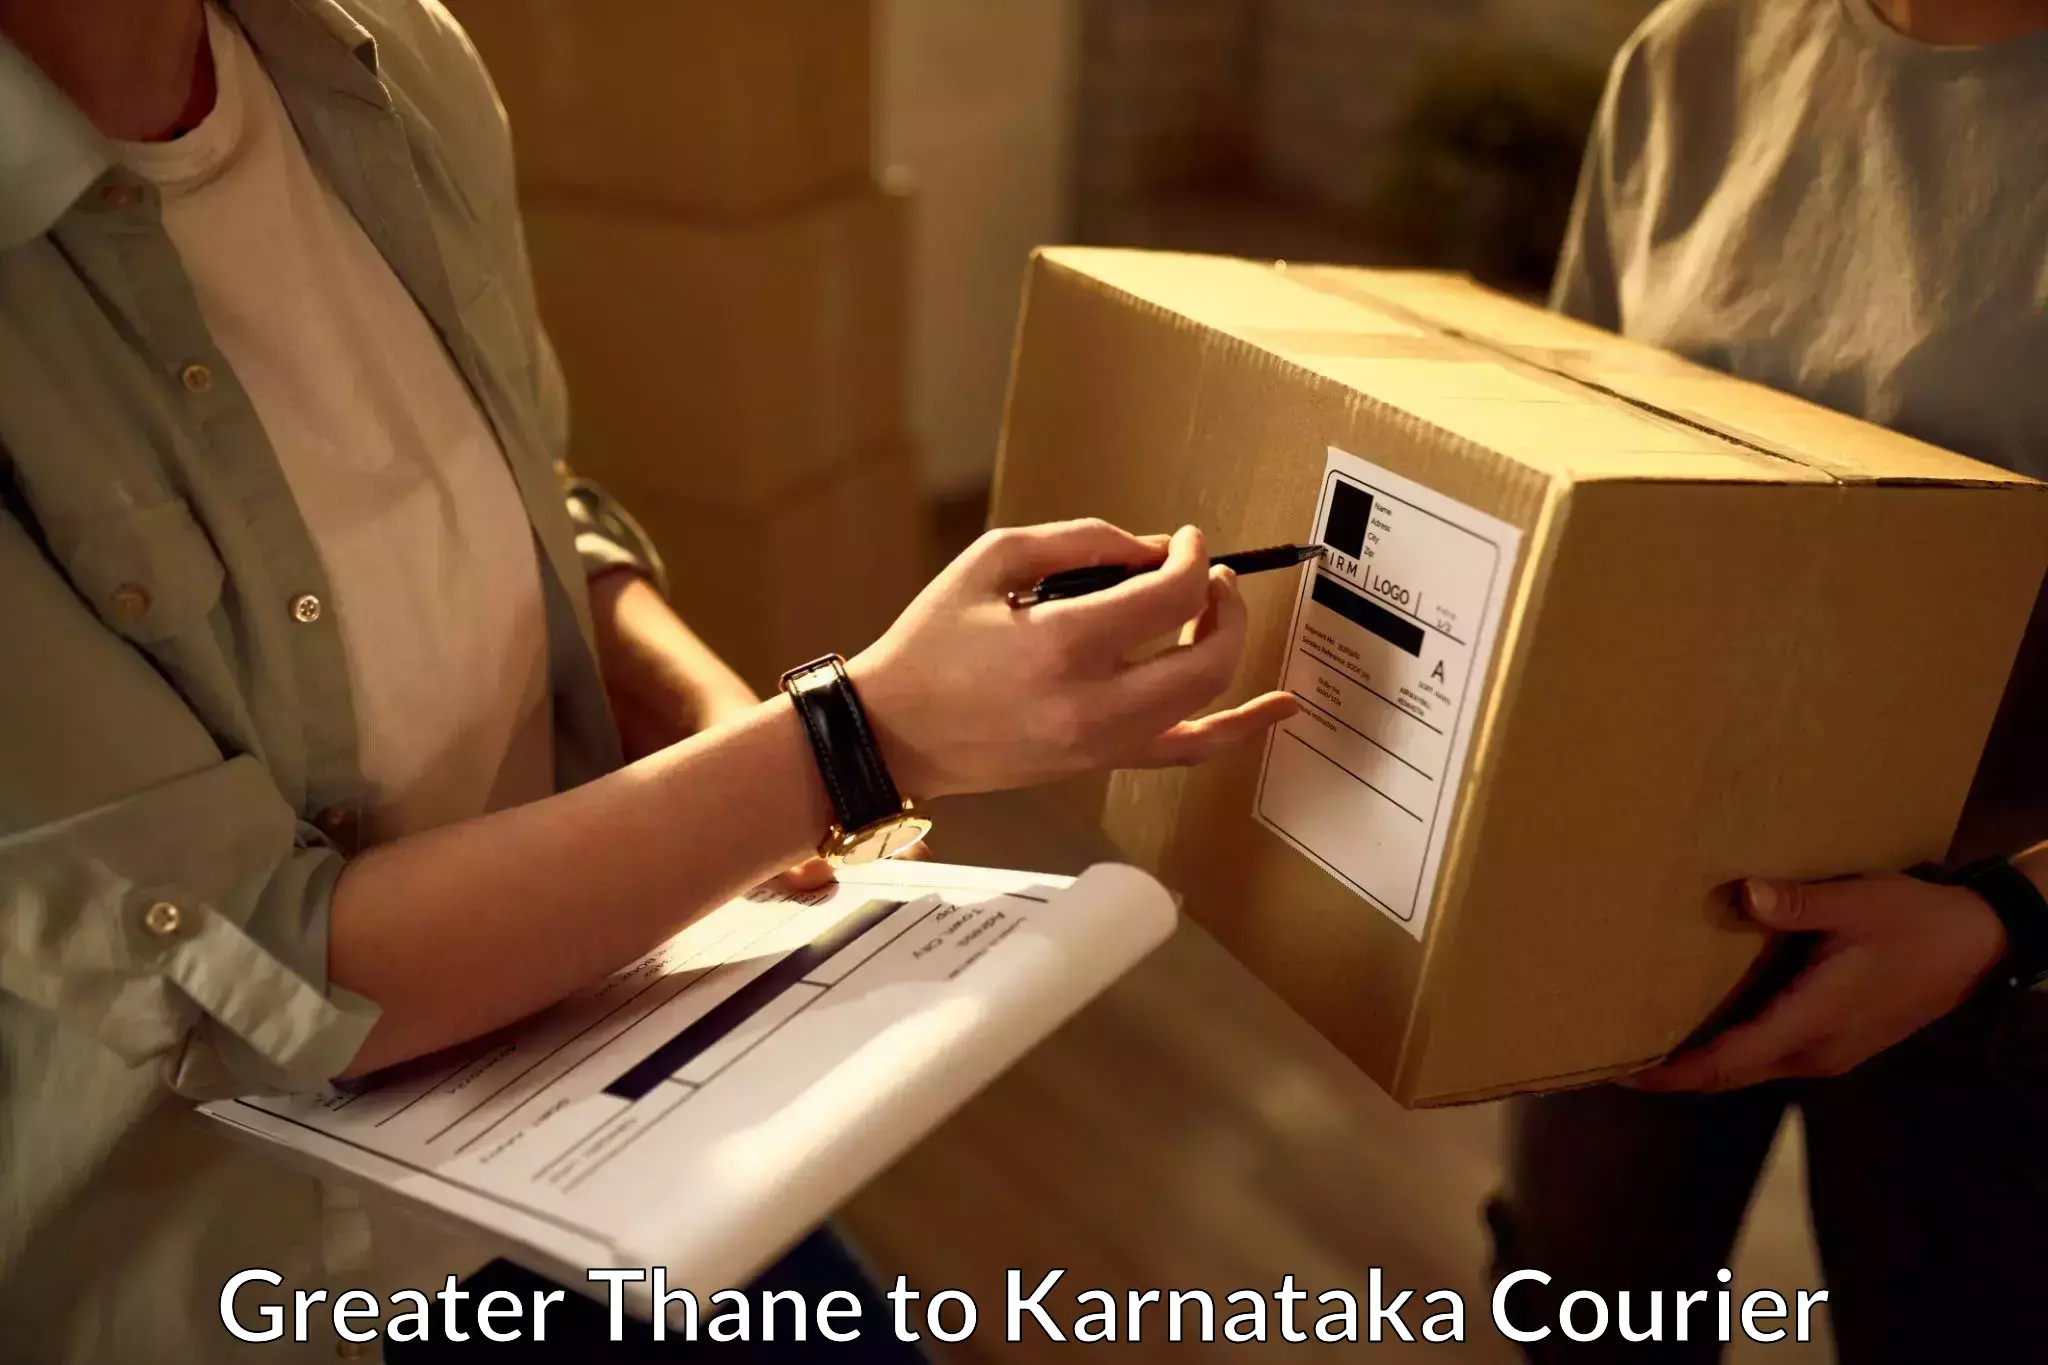 Global logistics network Greater Thane to Karnataka